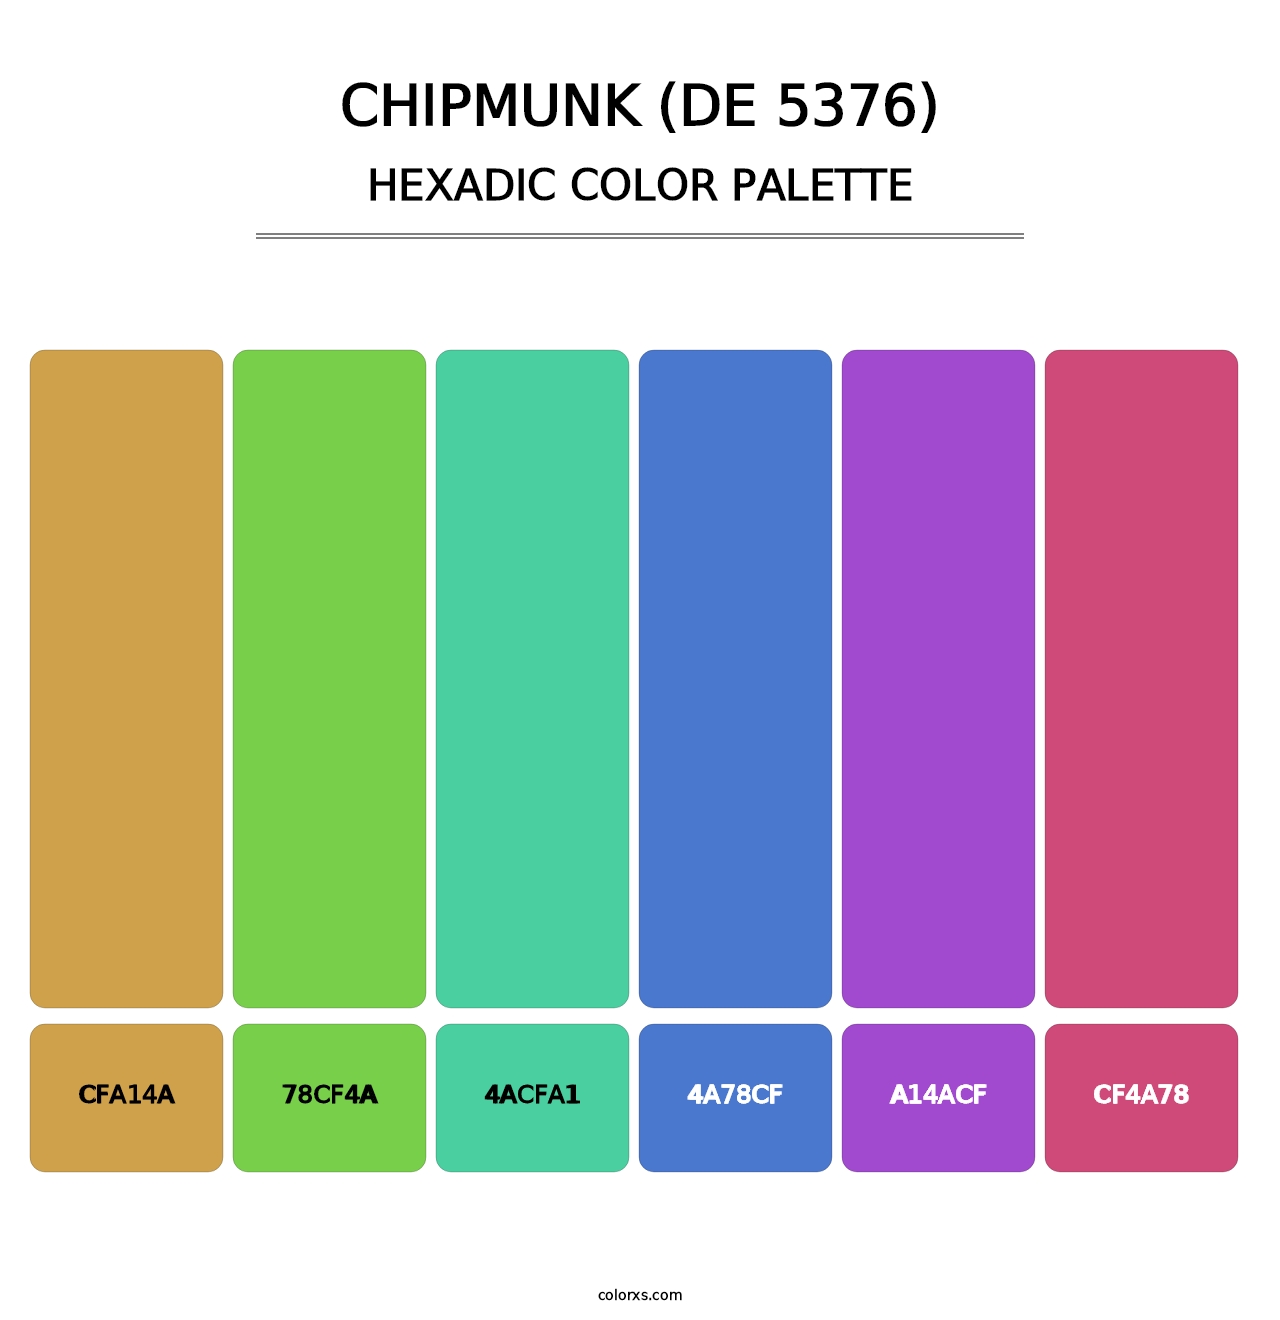 Chipmunk (DE 5376) - Hexadic Color Palette